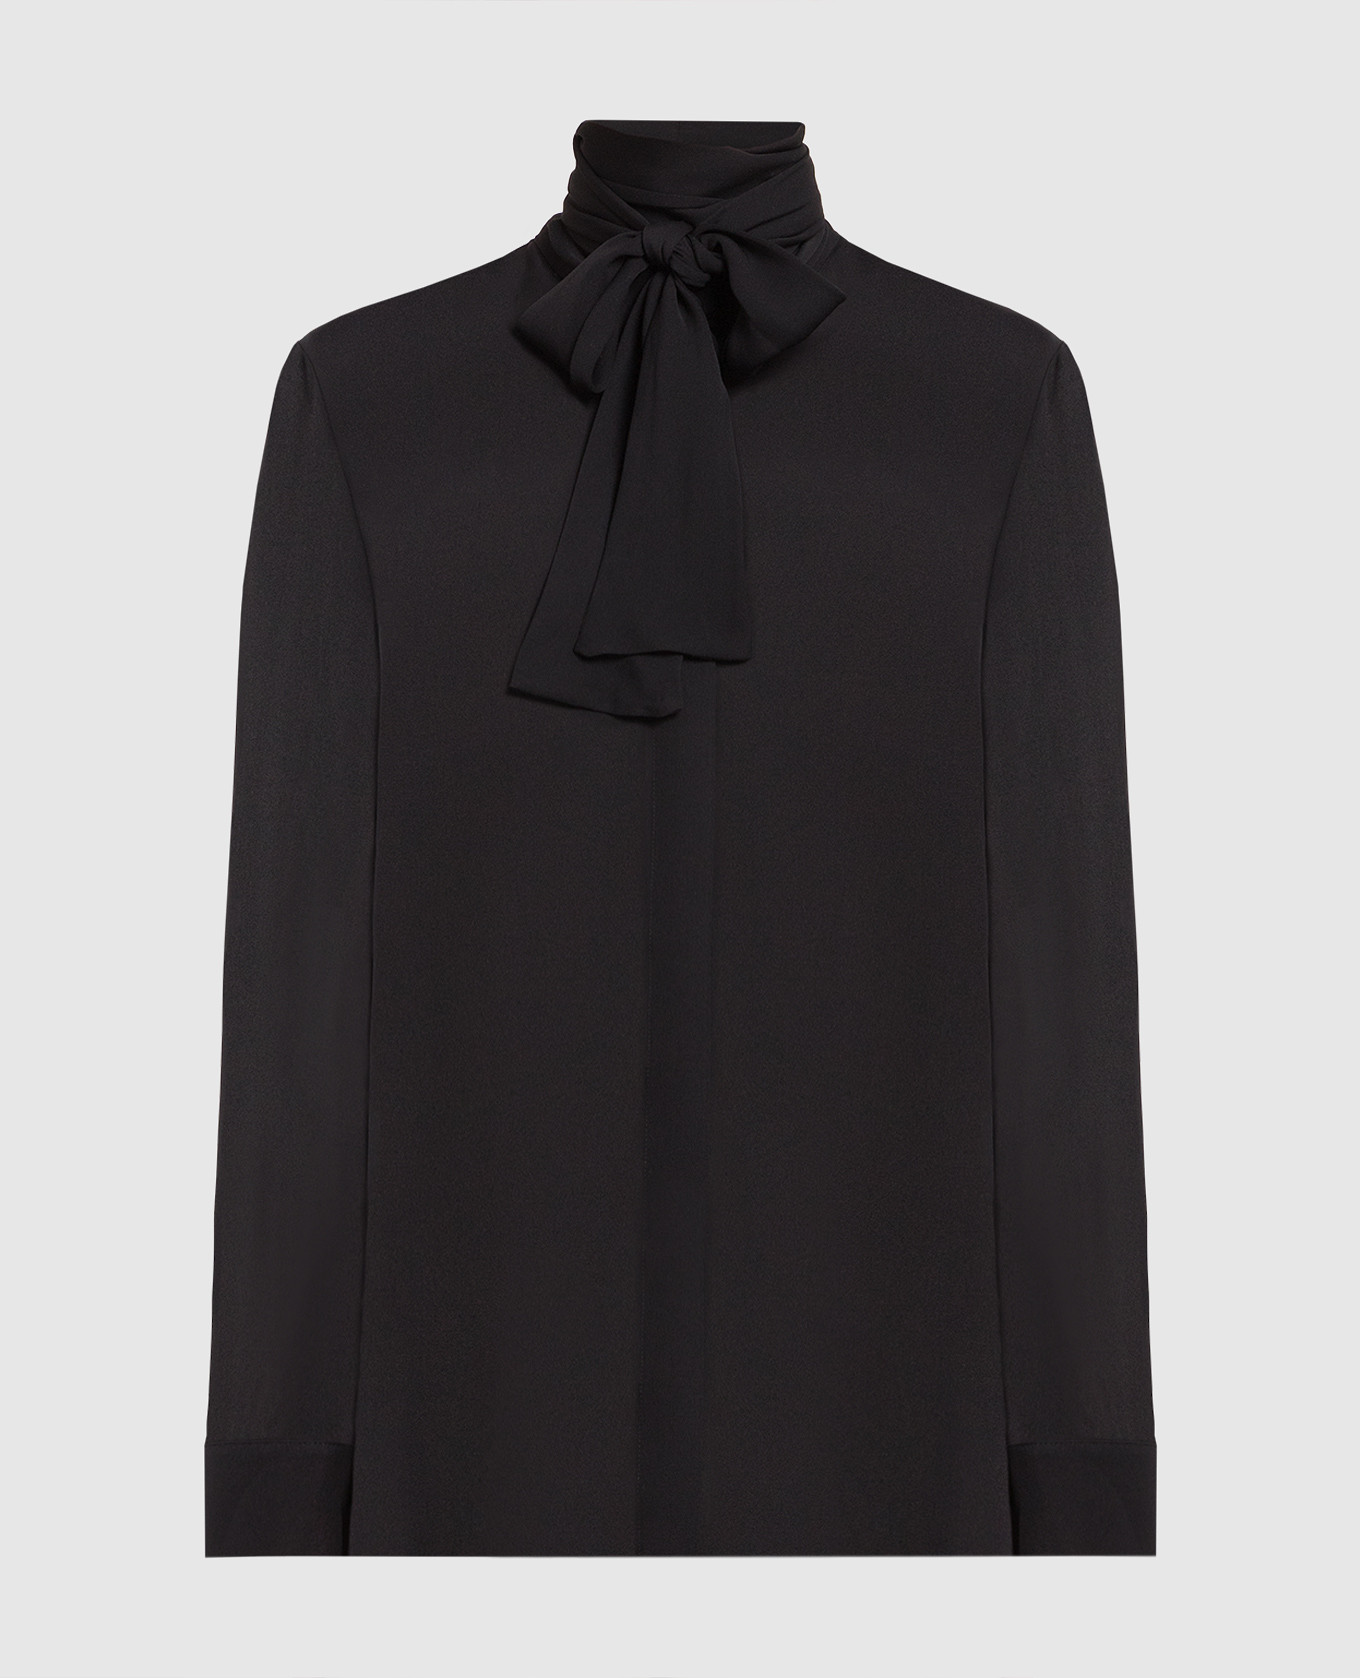 TASH black silk blouse